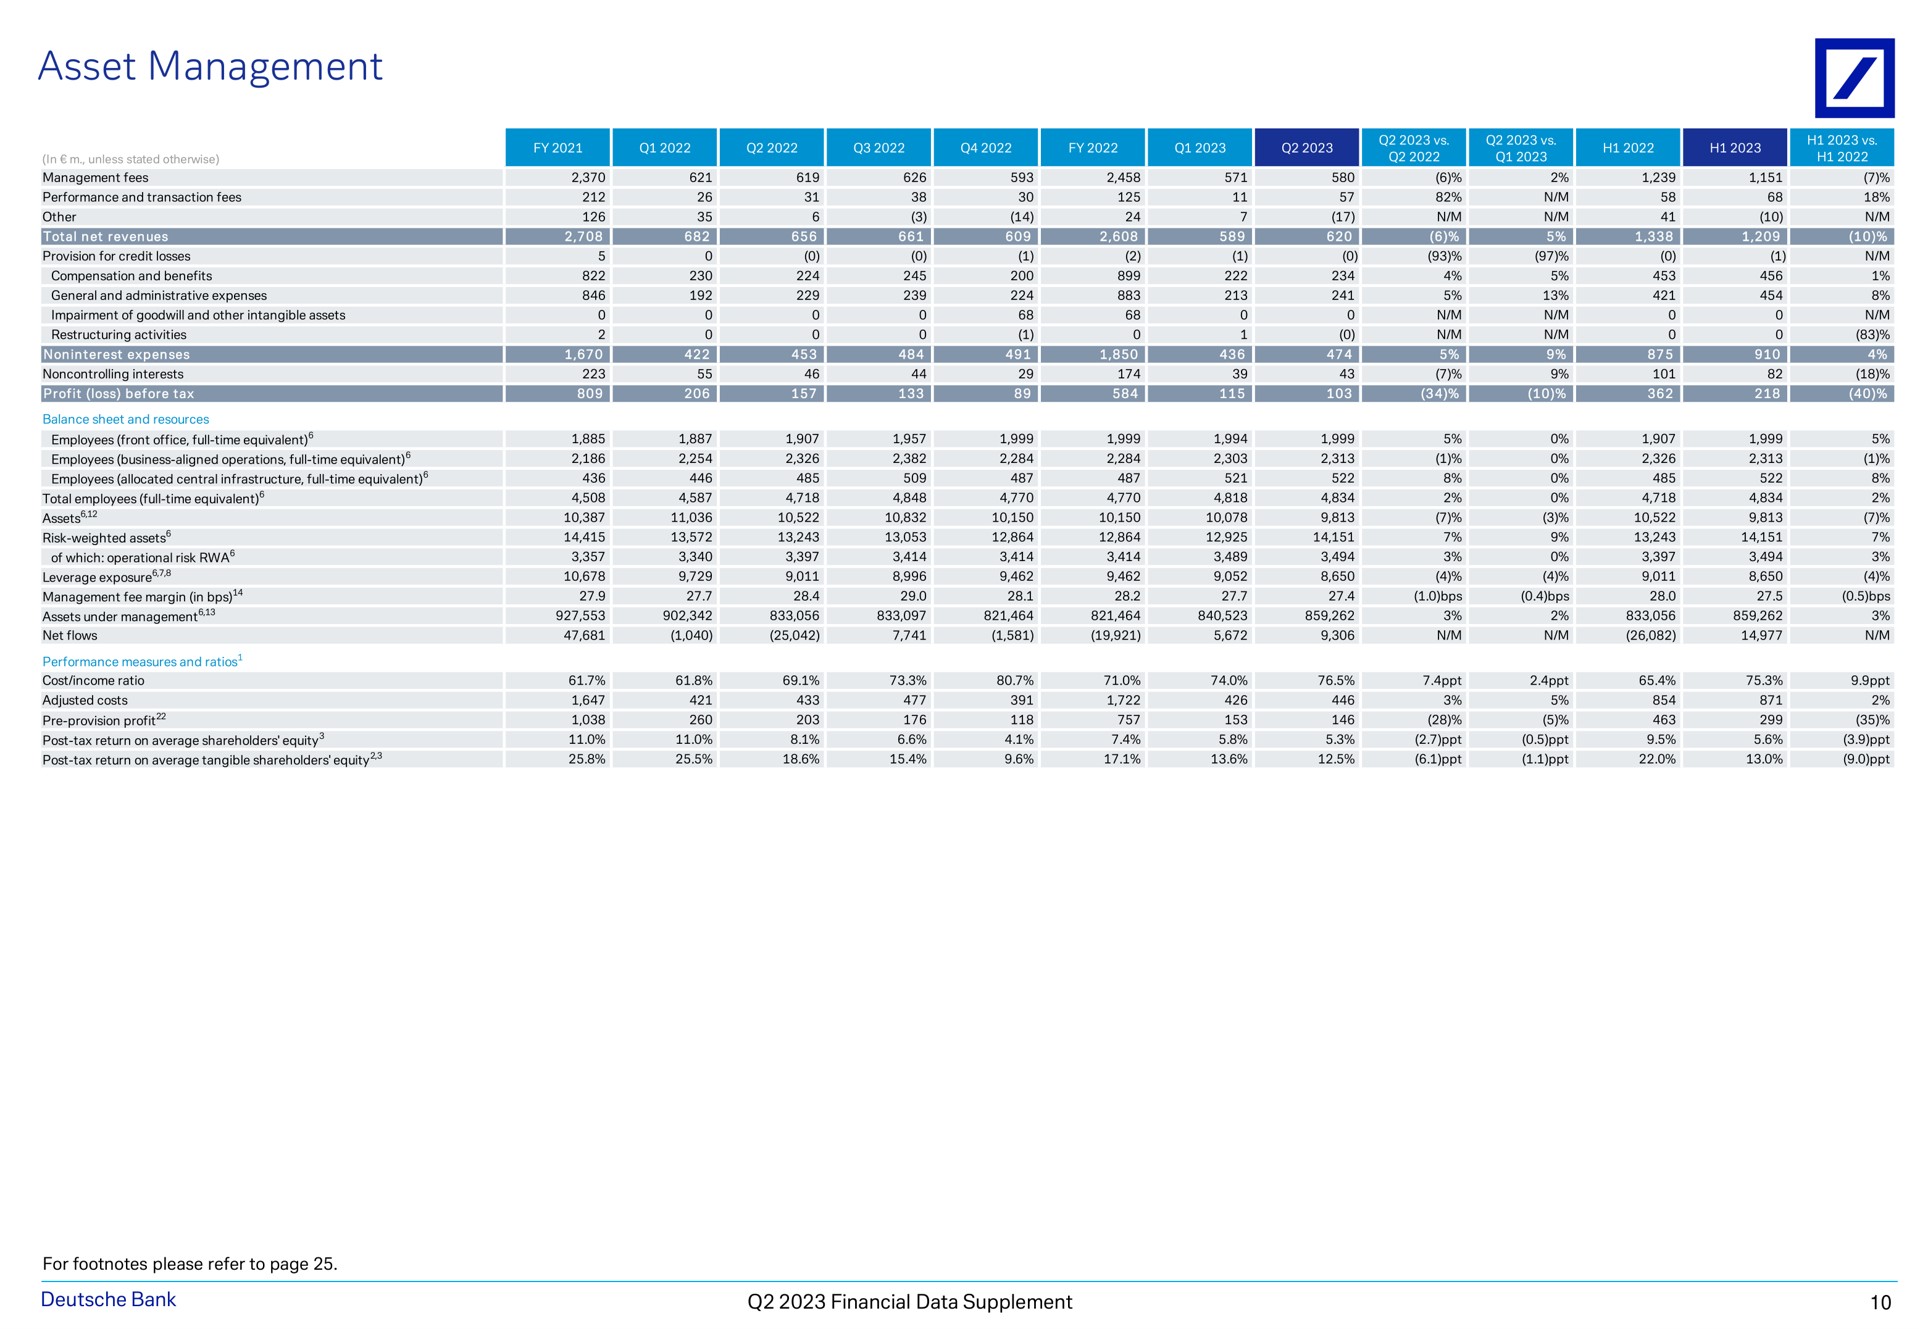 asset management bank financial data supplement | Deutsche Bank